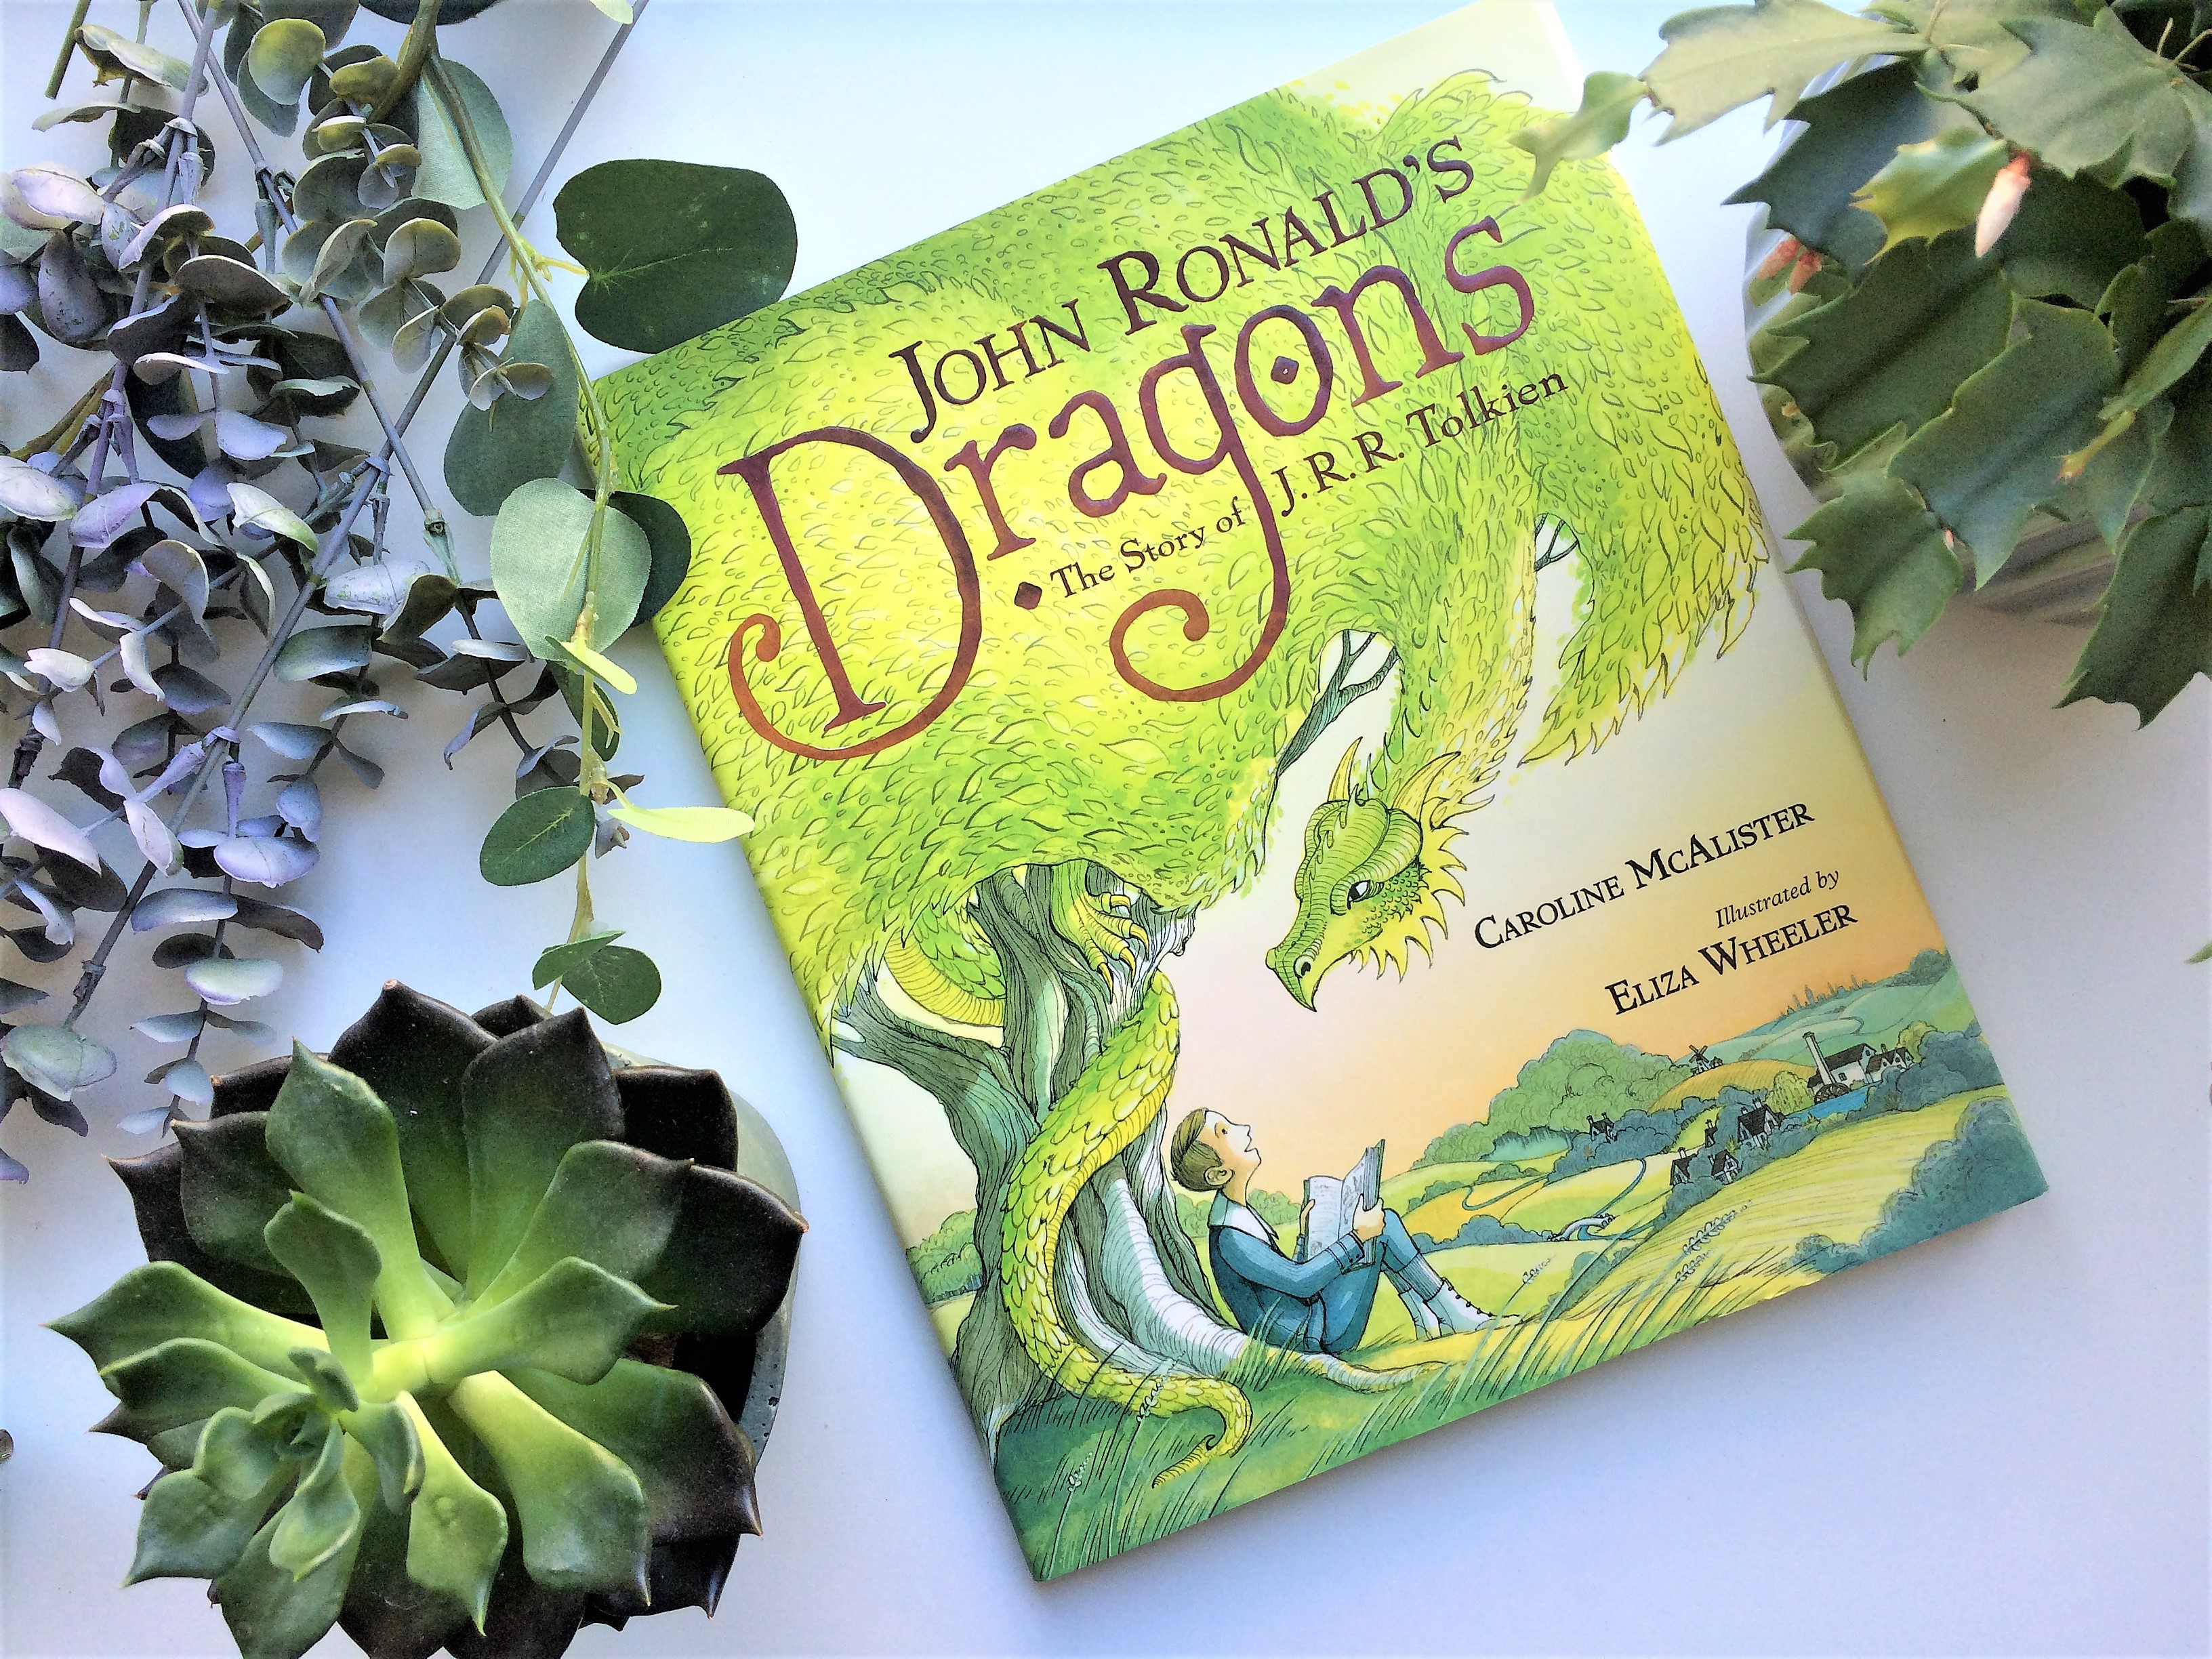 Billede af bogen "John Ronald's Dragons - The Story of J. R. R. Tolkien", skrevet af Caroline McAlister og illustreret af Eliza Wheeler